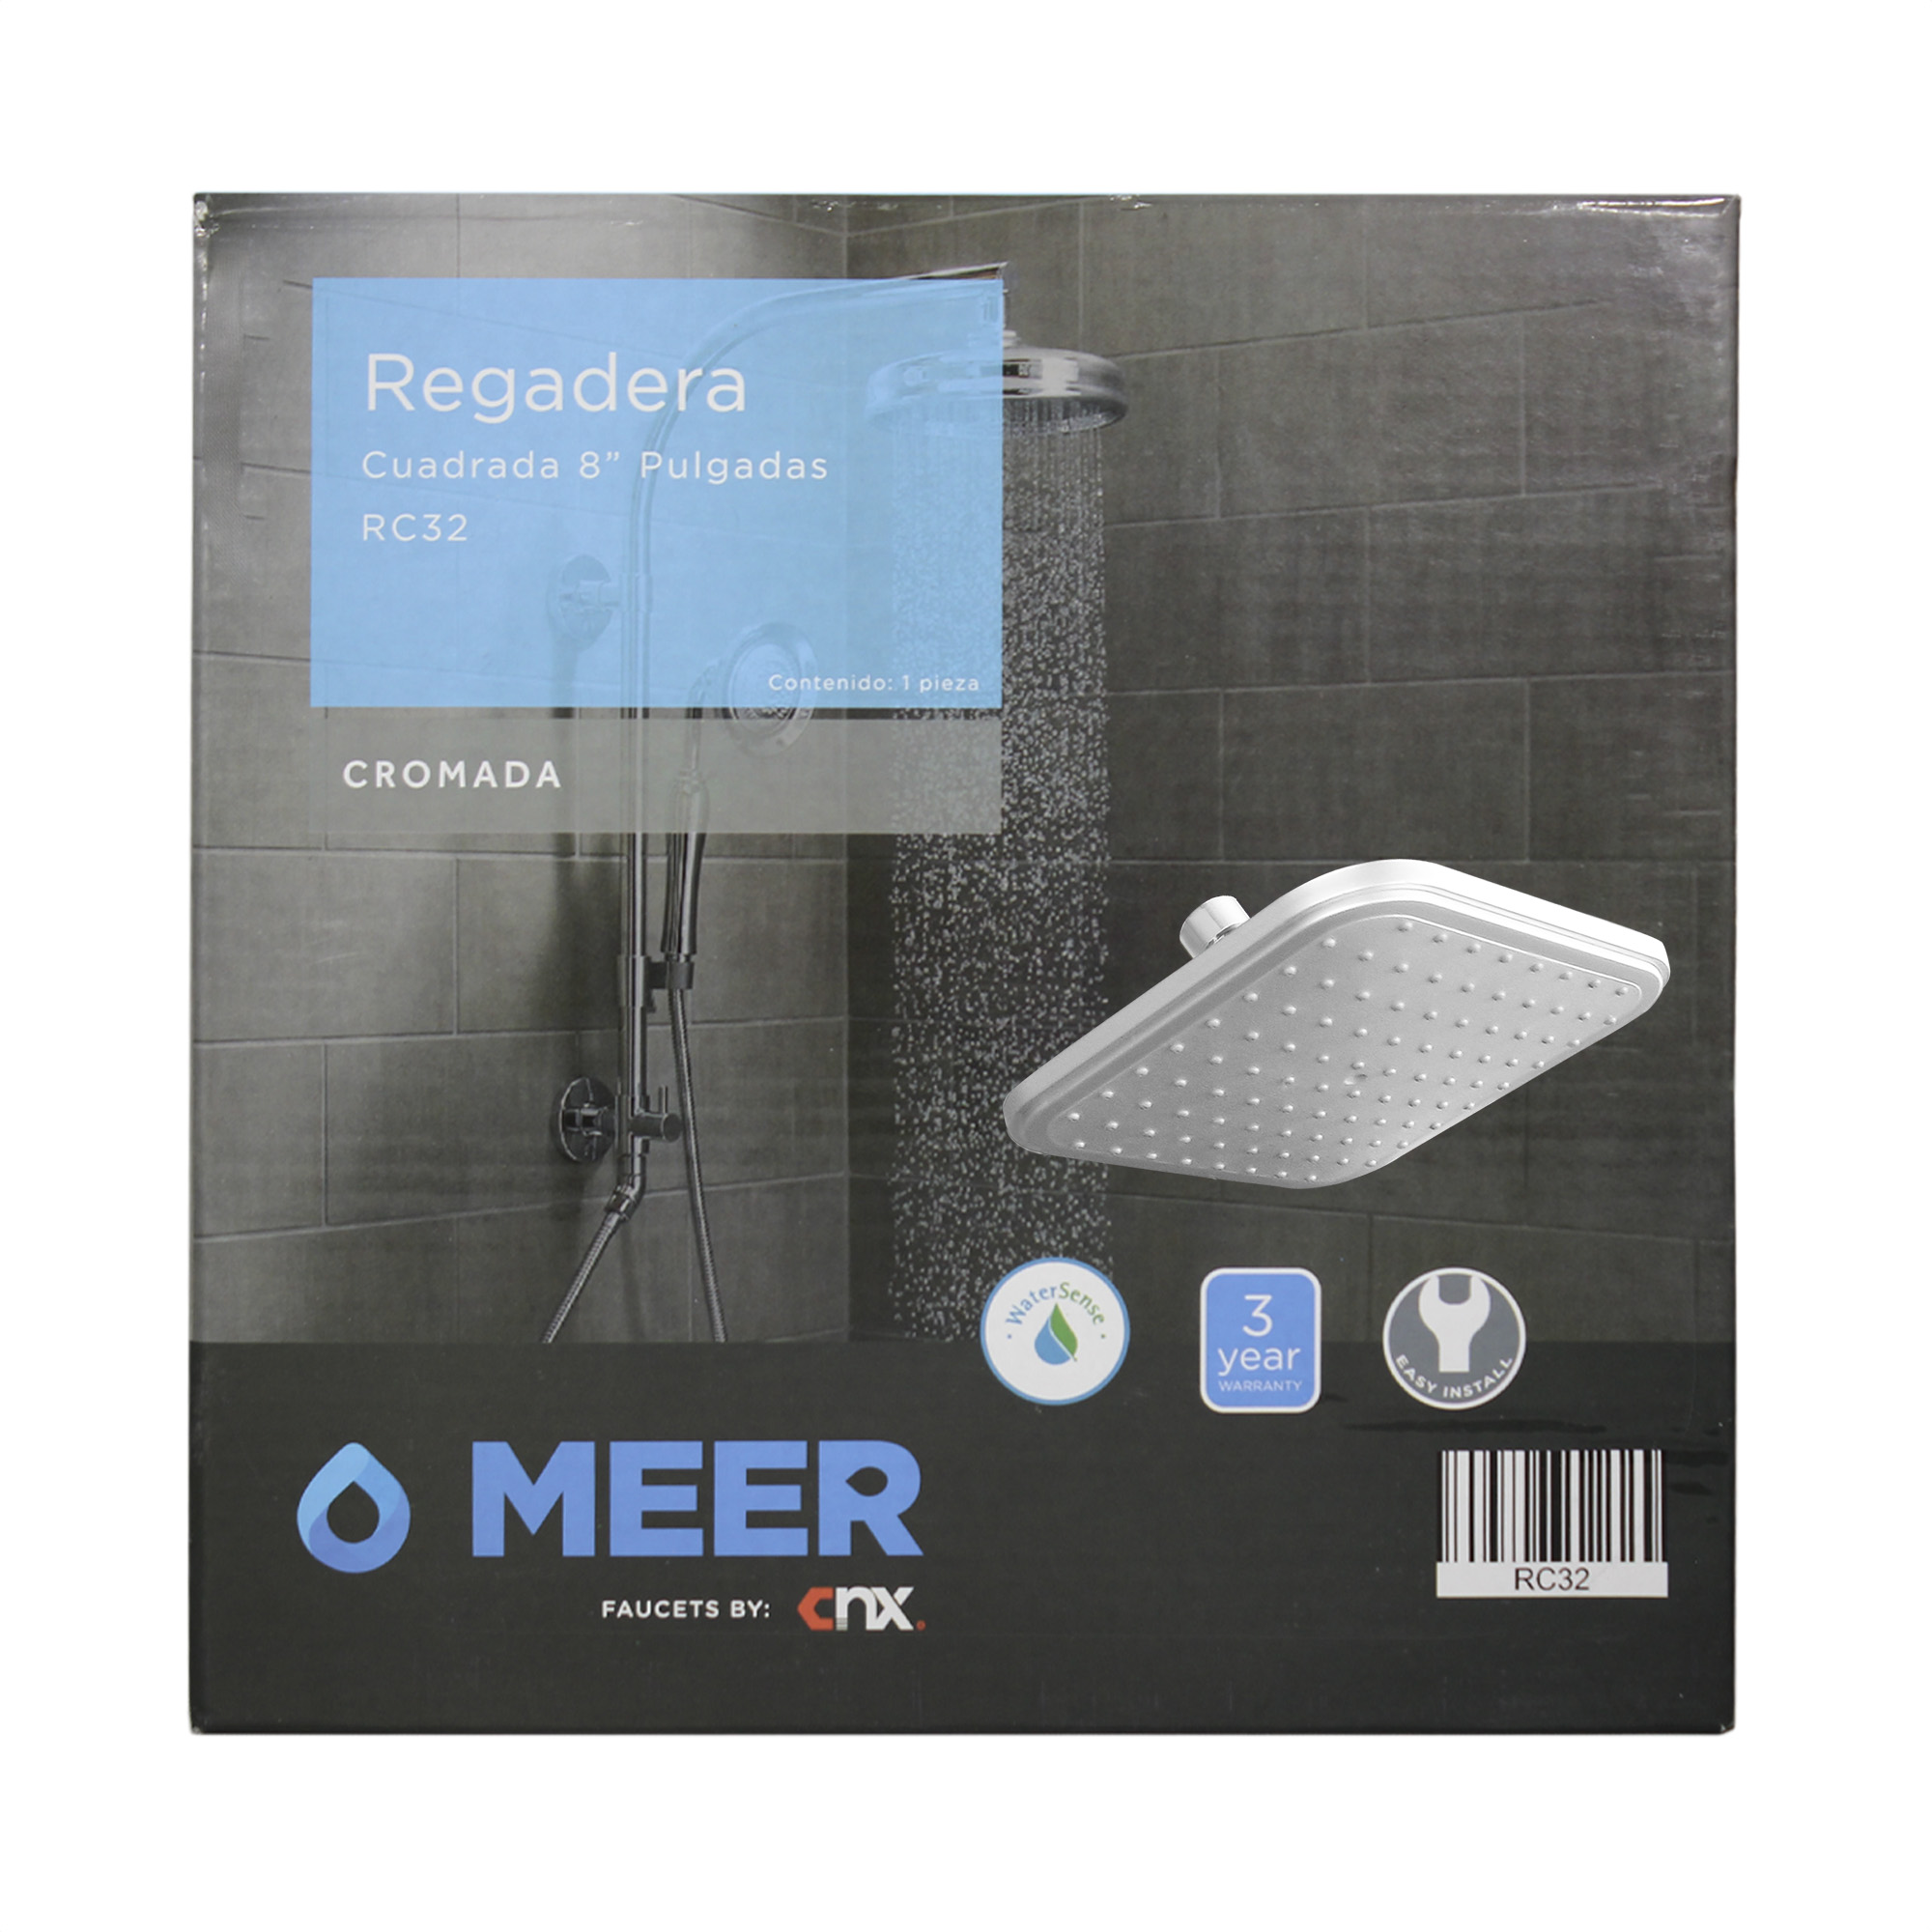 MEER Faucets by CNS | Cabezal de Ducha de Lluvia, Regadera Cuadrada de ABS Cromado 20 cm x 20 cm (8')